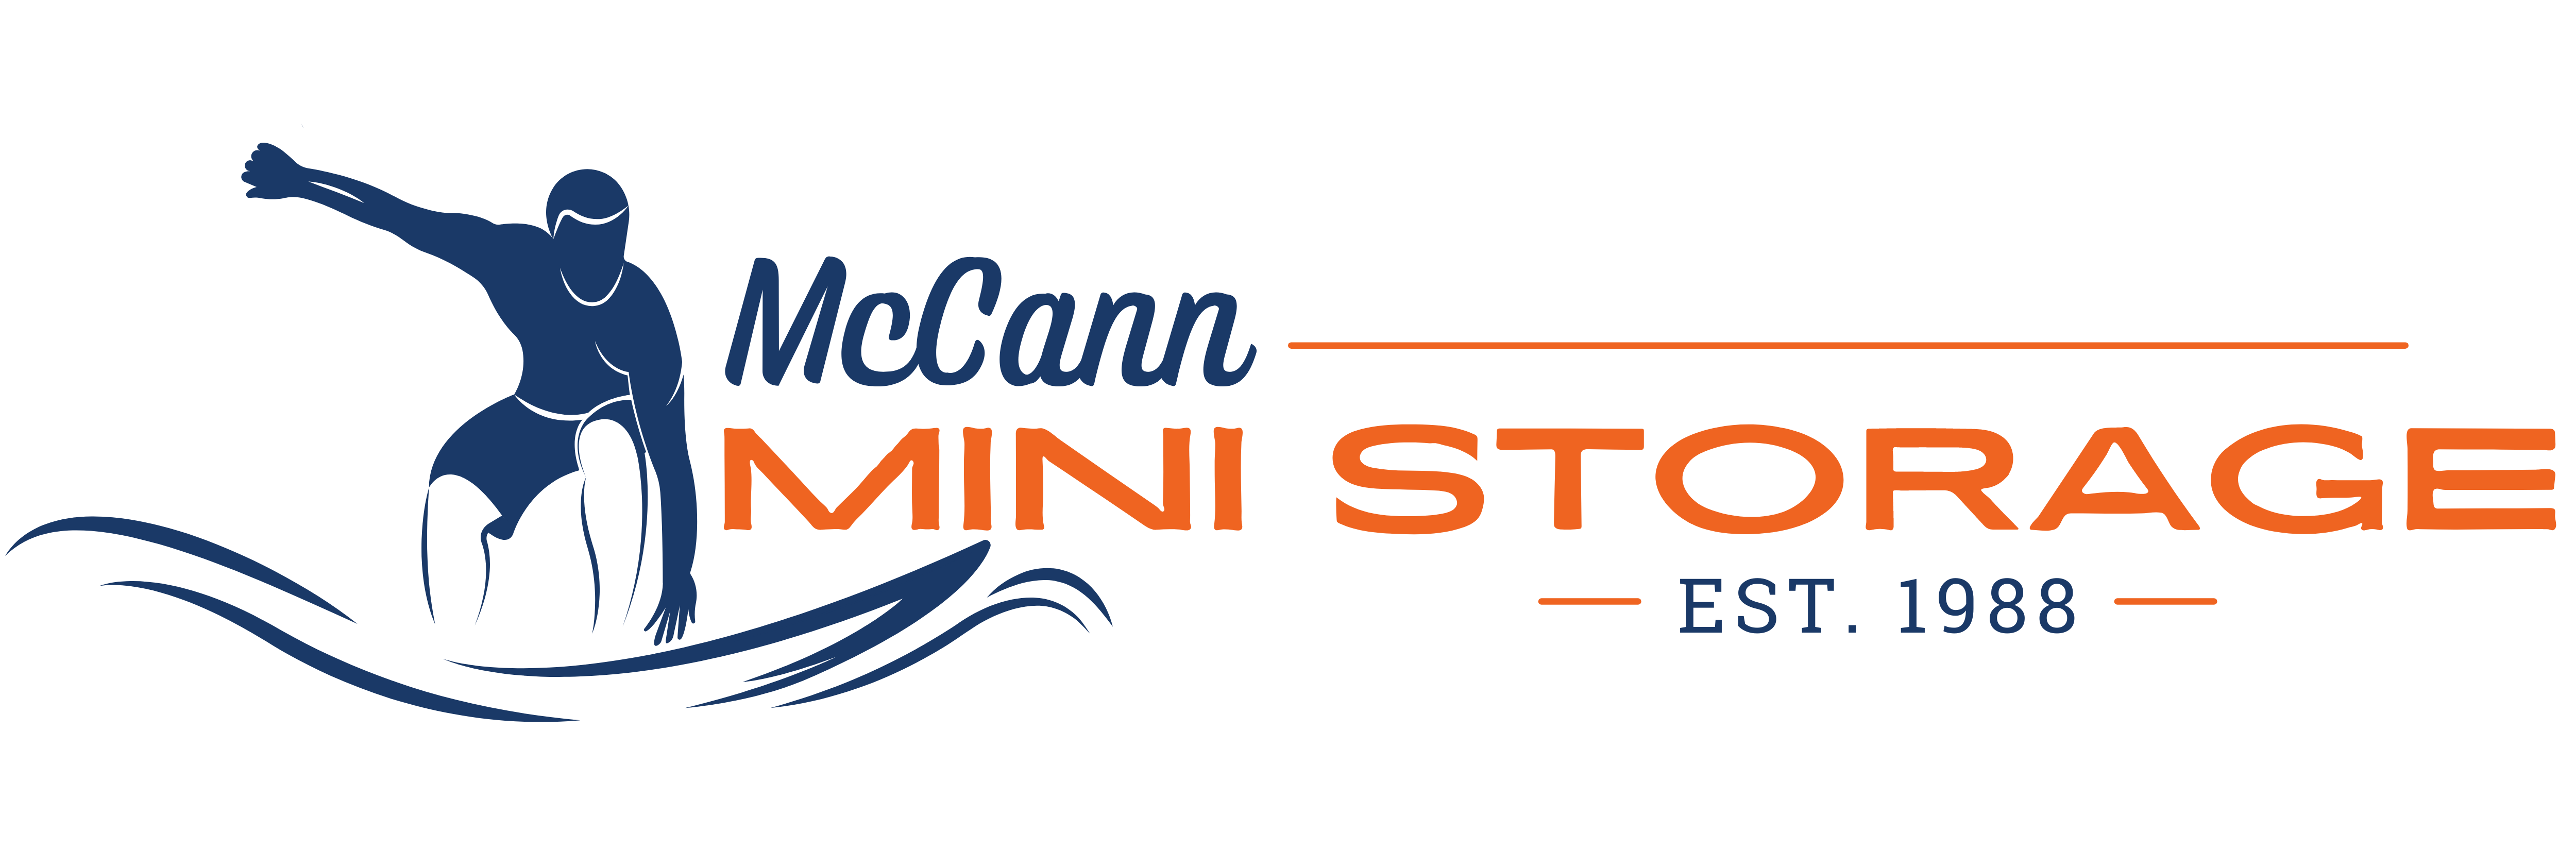 McCann Mini Storage Logo